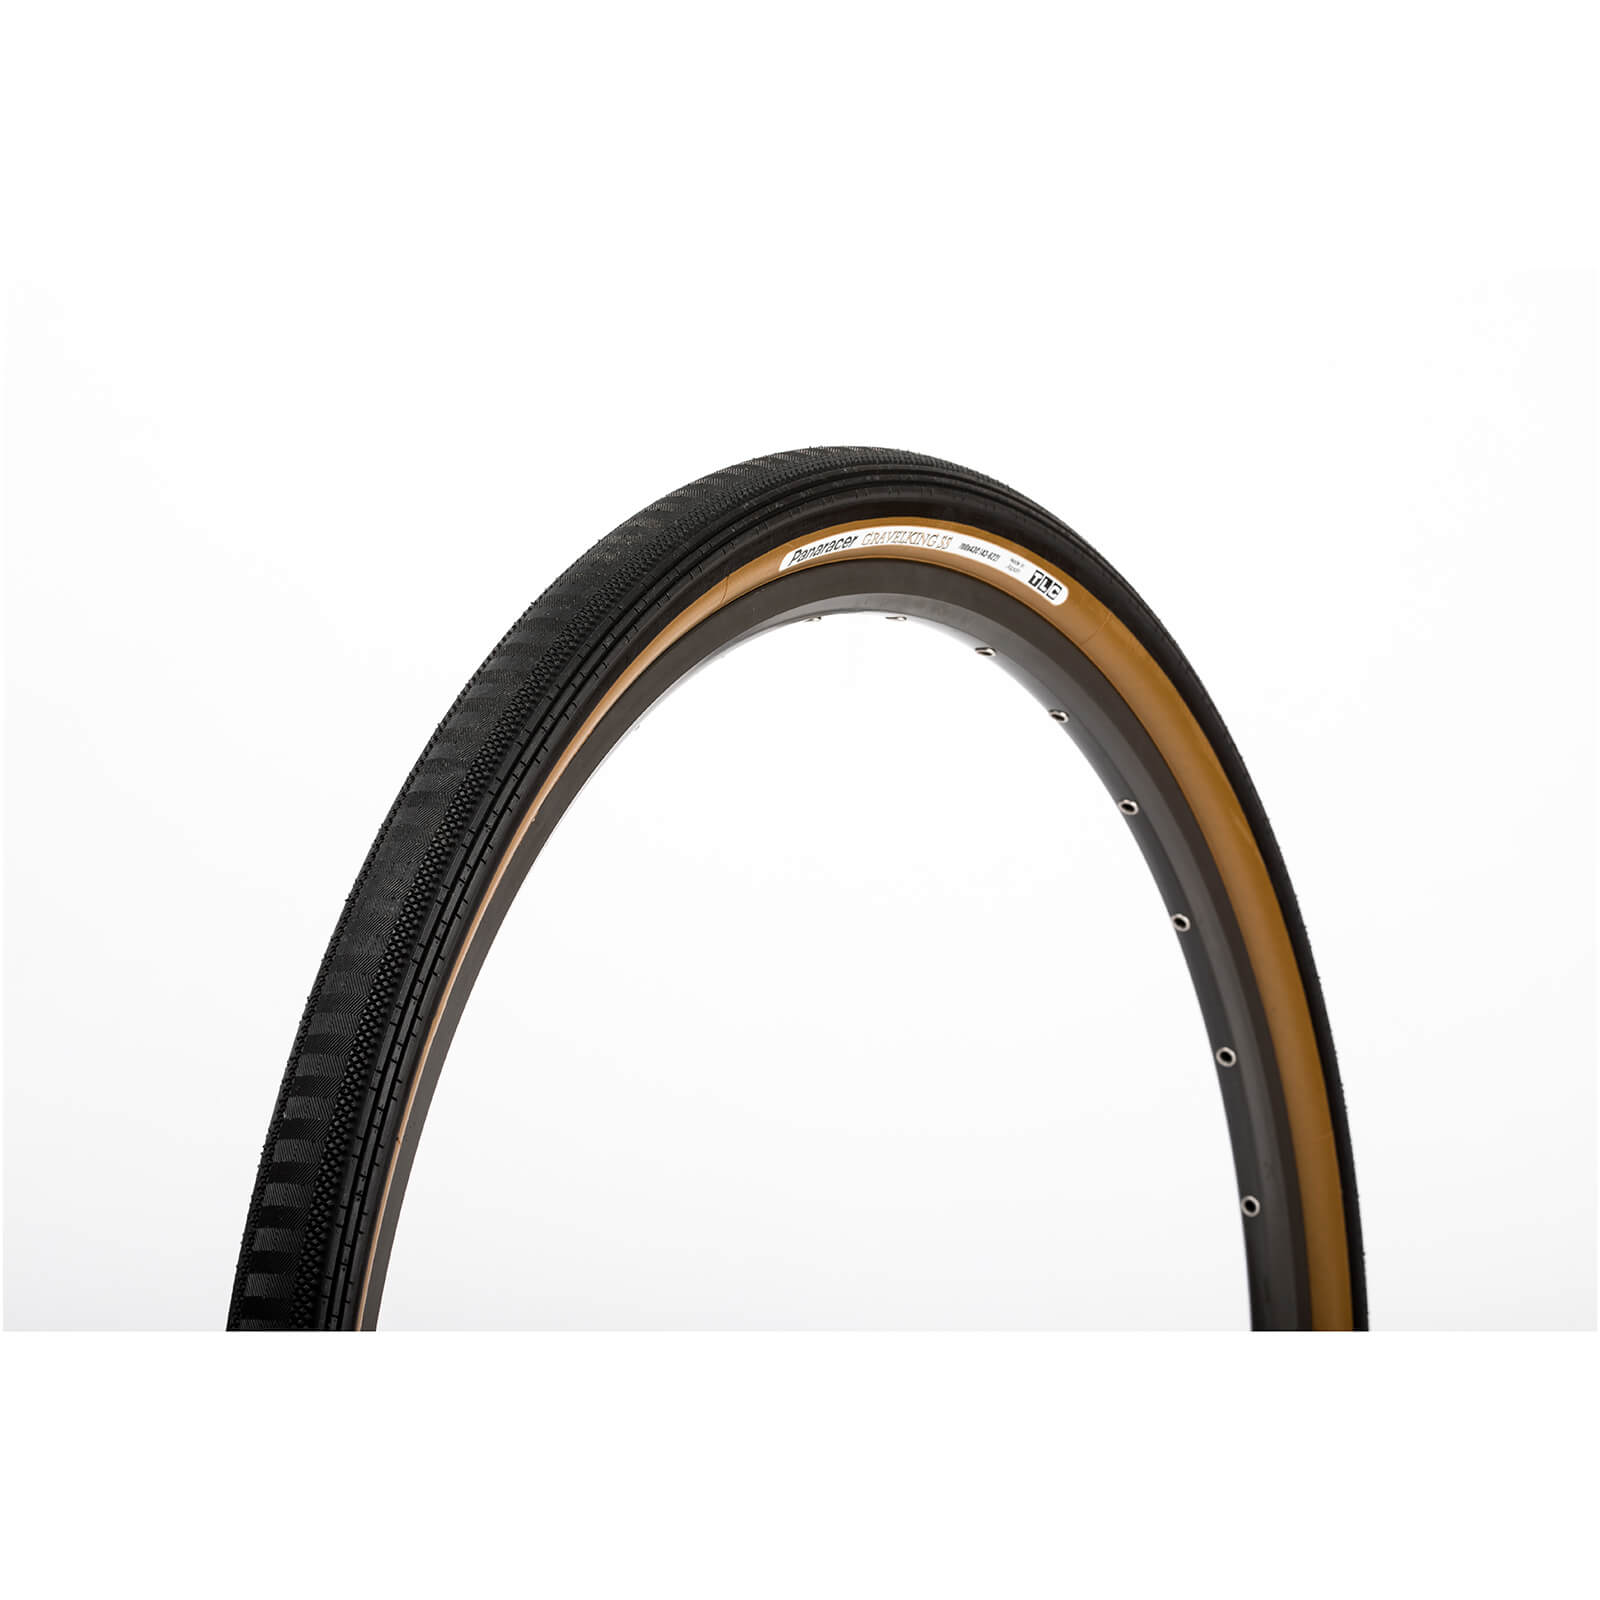 Panaracer Gravel King Semi Slick Gravel Tyre - 27.5 x 1.90 - black/brown